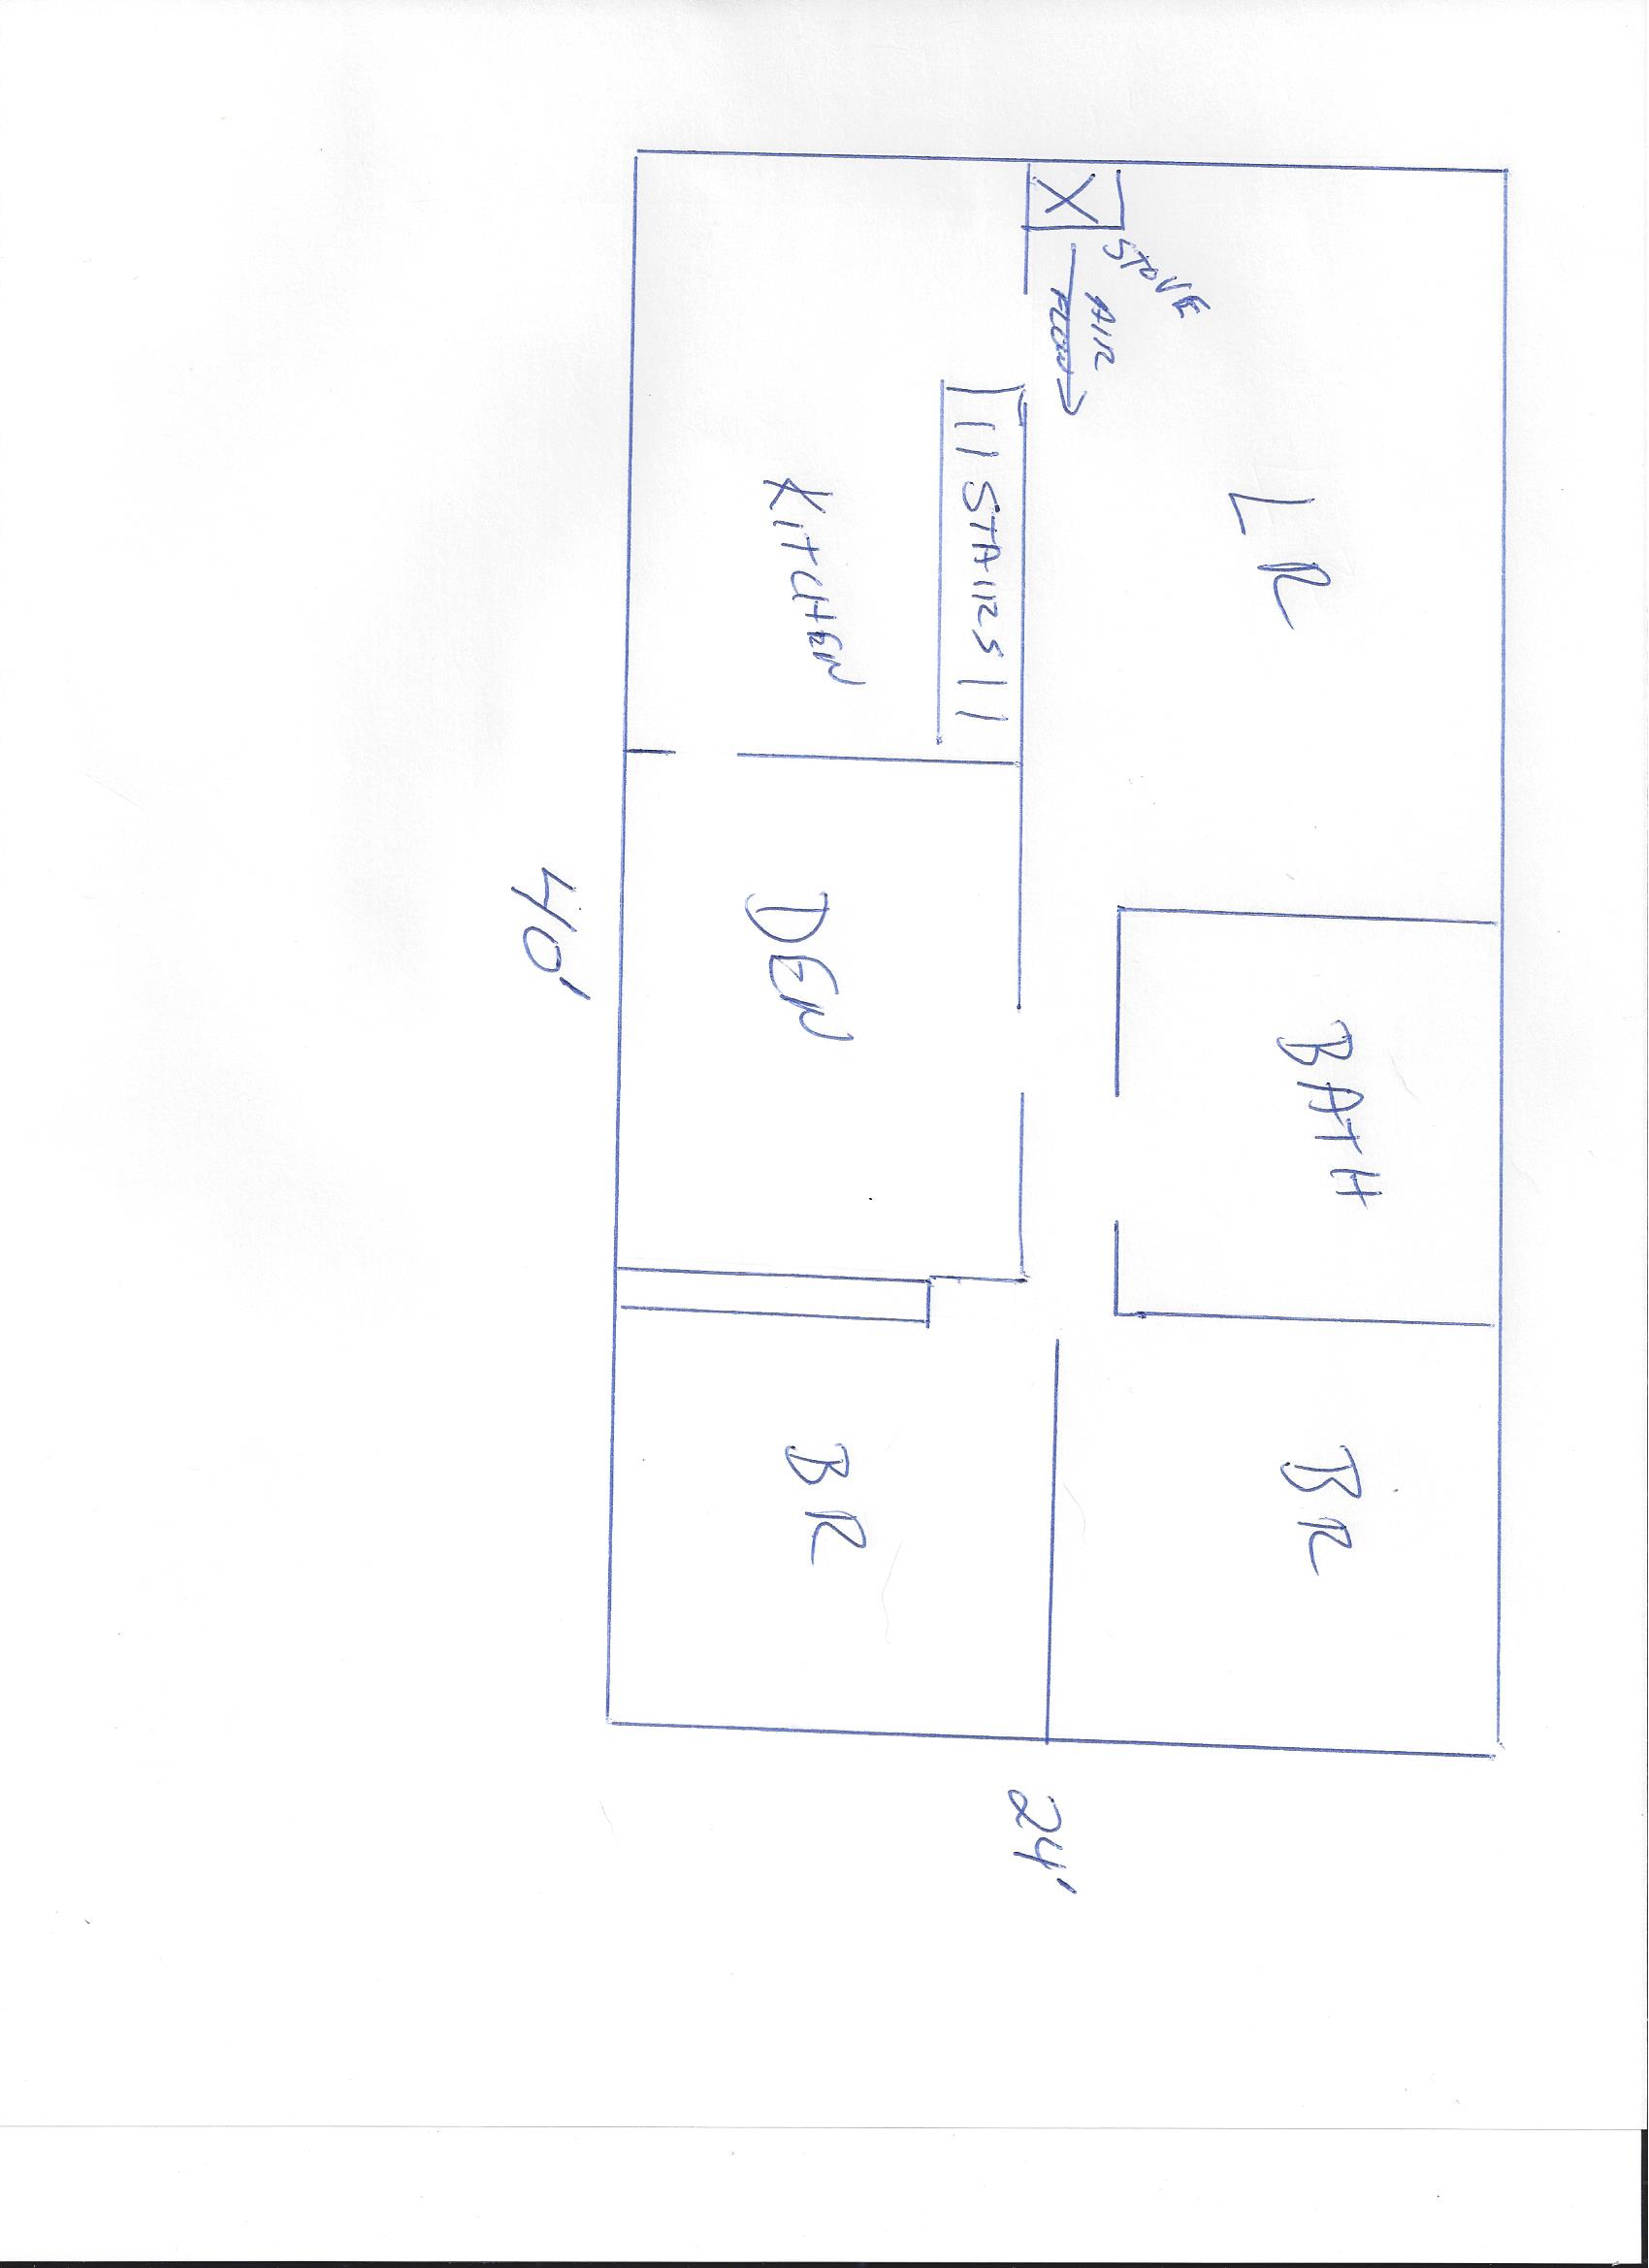 Main Floor Layout P43 air flow schematic.jpg